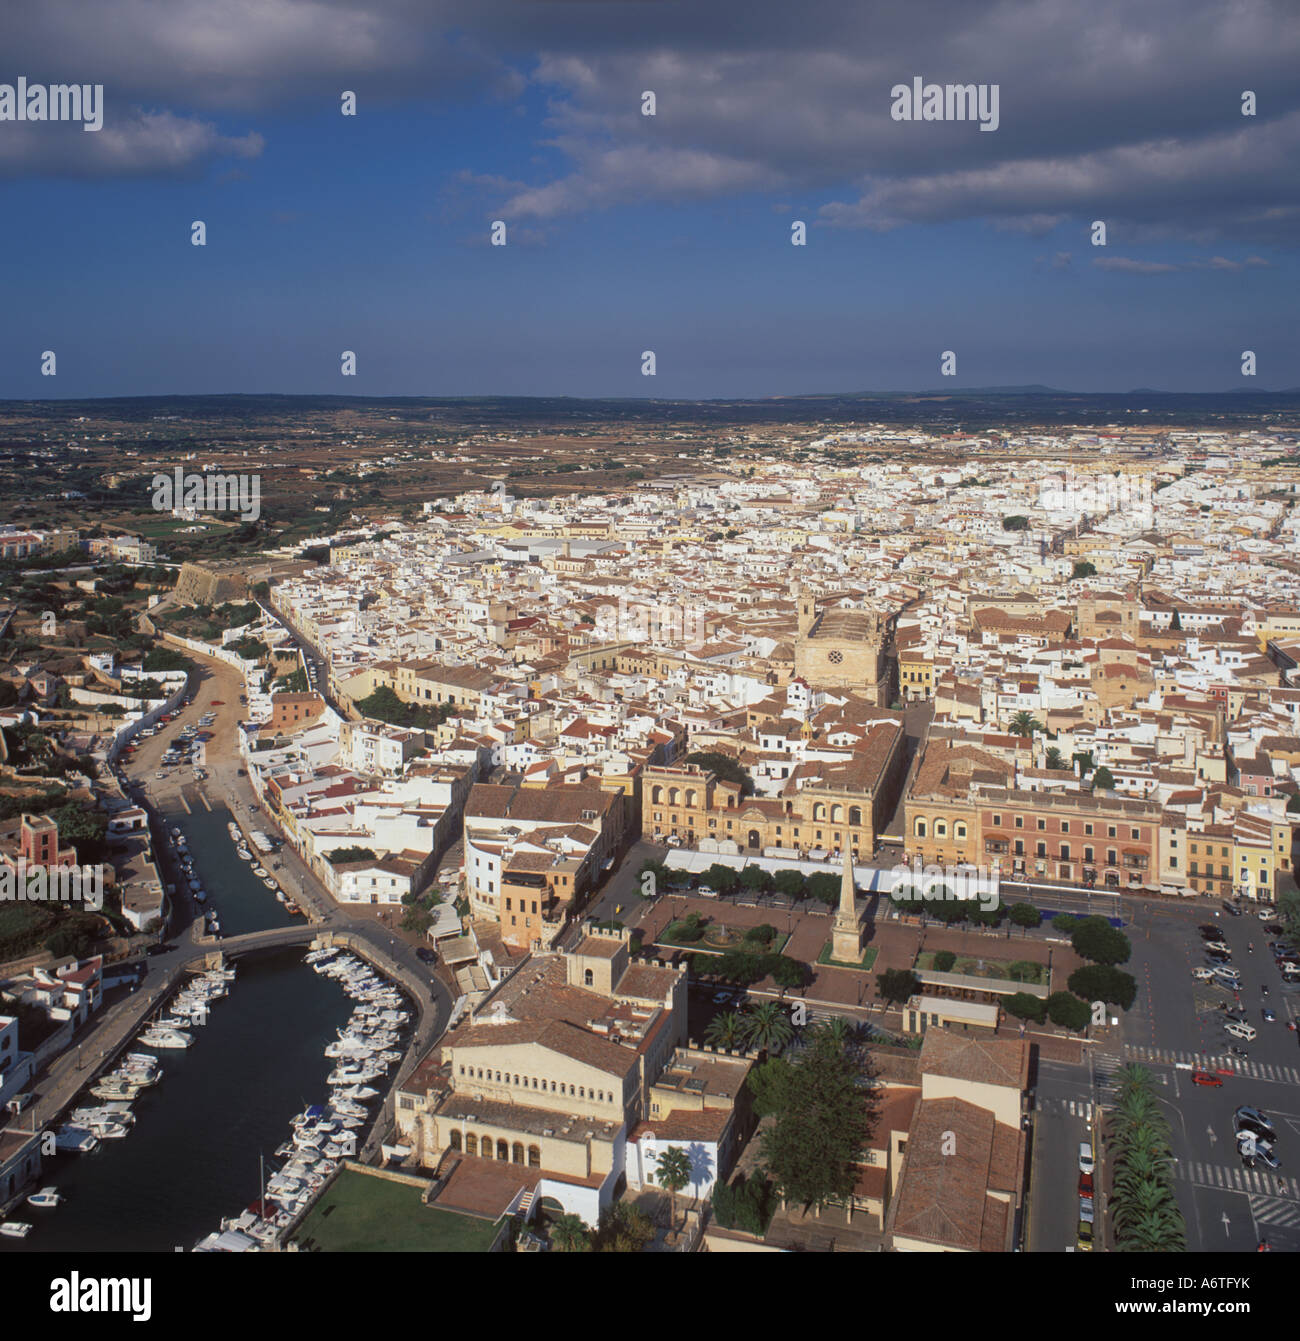 Vista aérea - Mirando al noreste en la plaza principal de la ciudad de Ciutadella / Ciudadella, West Coast Menorca / Menorca Foto de stock